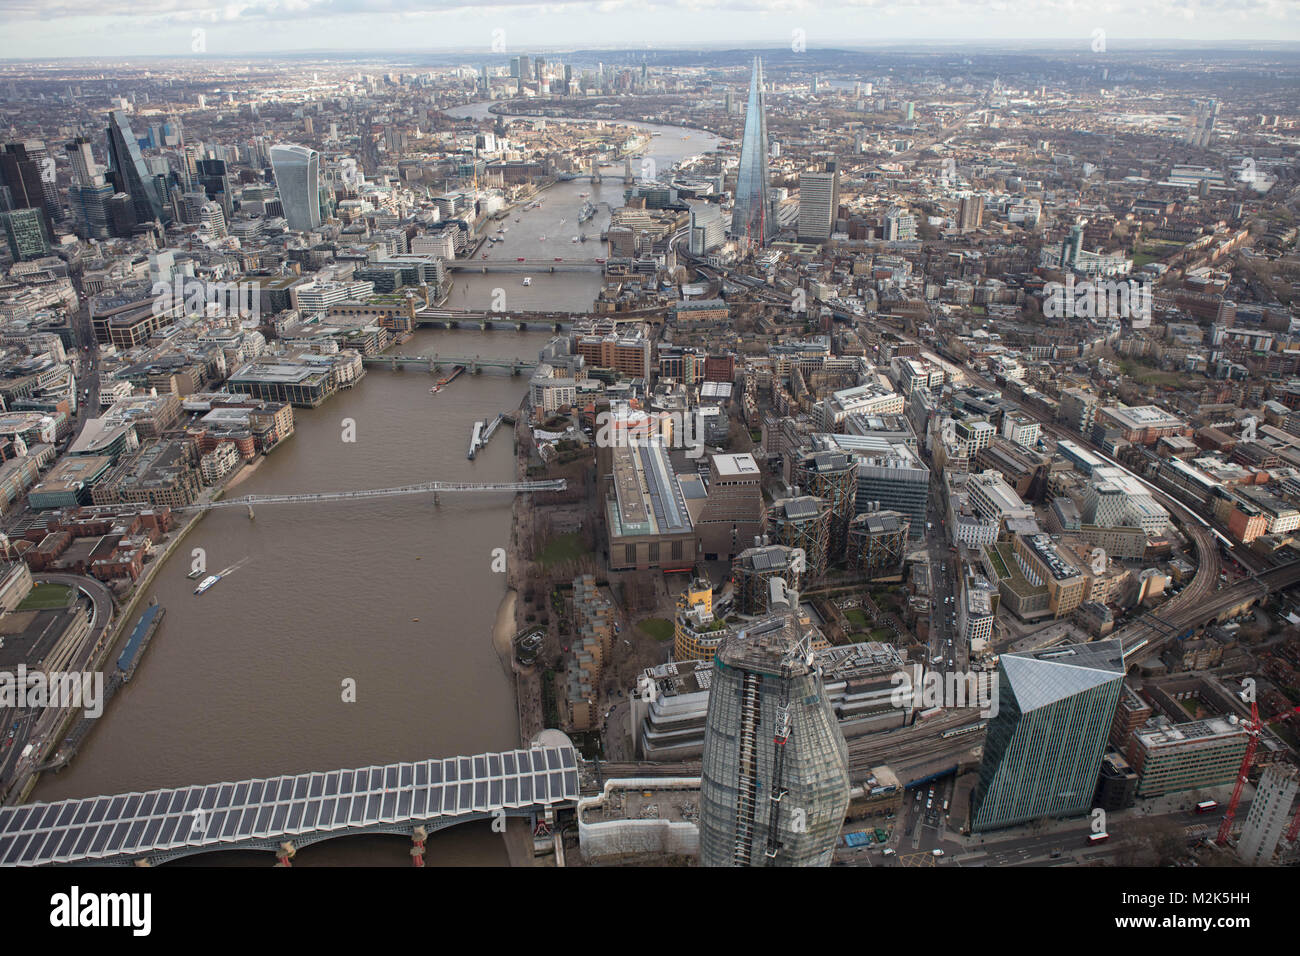 Une vue aérienne de Londres à l'Est le long de la rivière Thames de Blackfriars Bridge avec Canary Wharf visible dans la distance. Banque D'Images